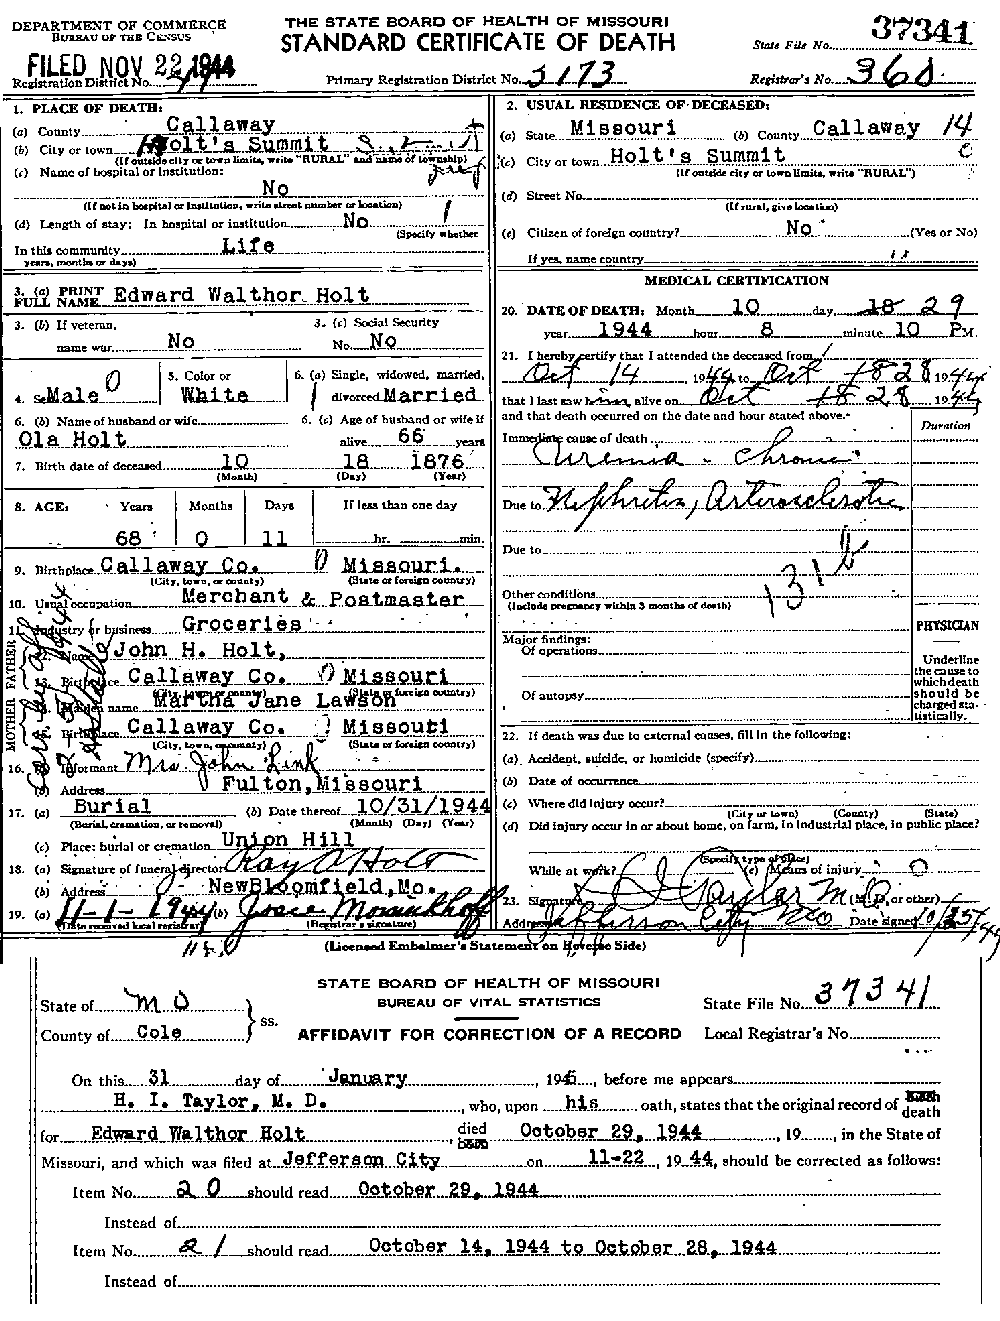 Death Certificate of Holt, Edward Walthor